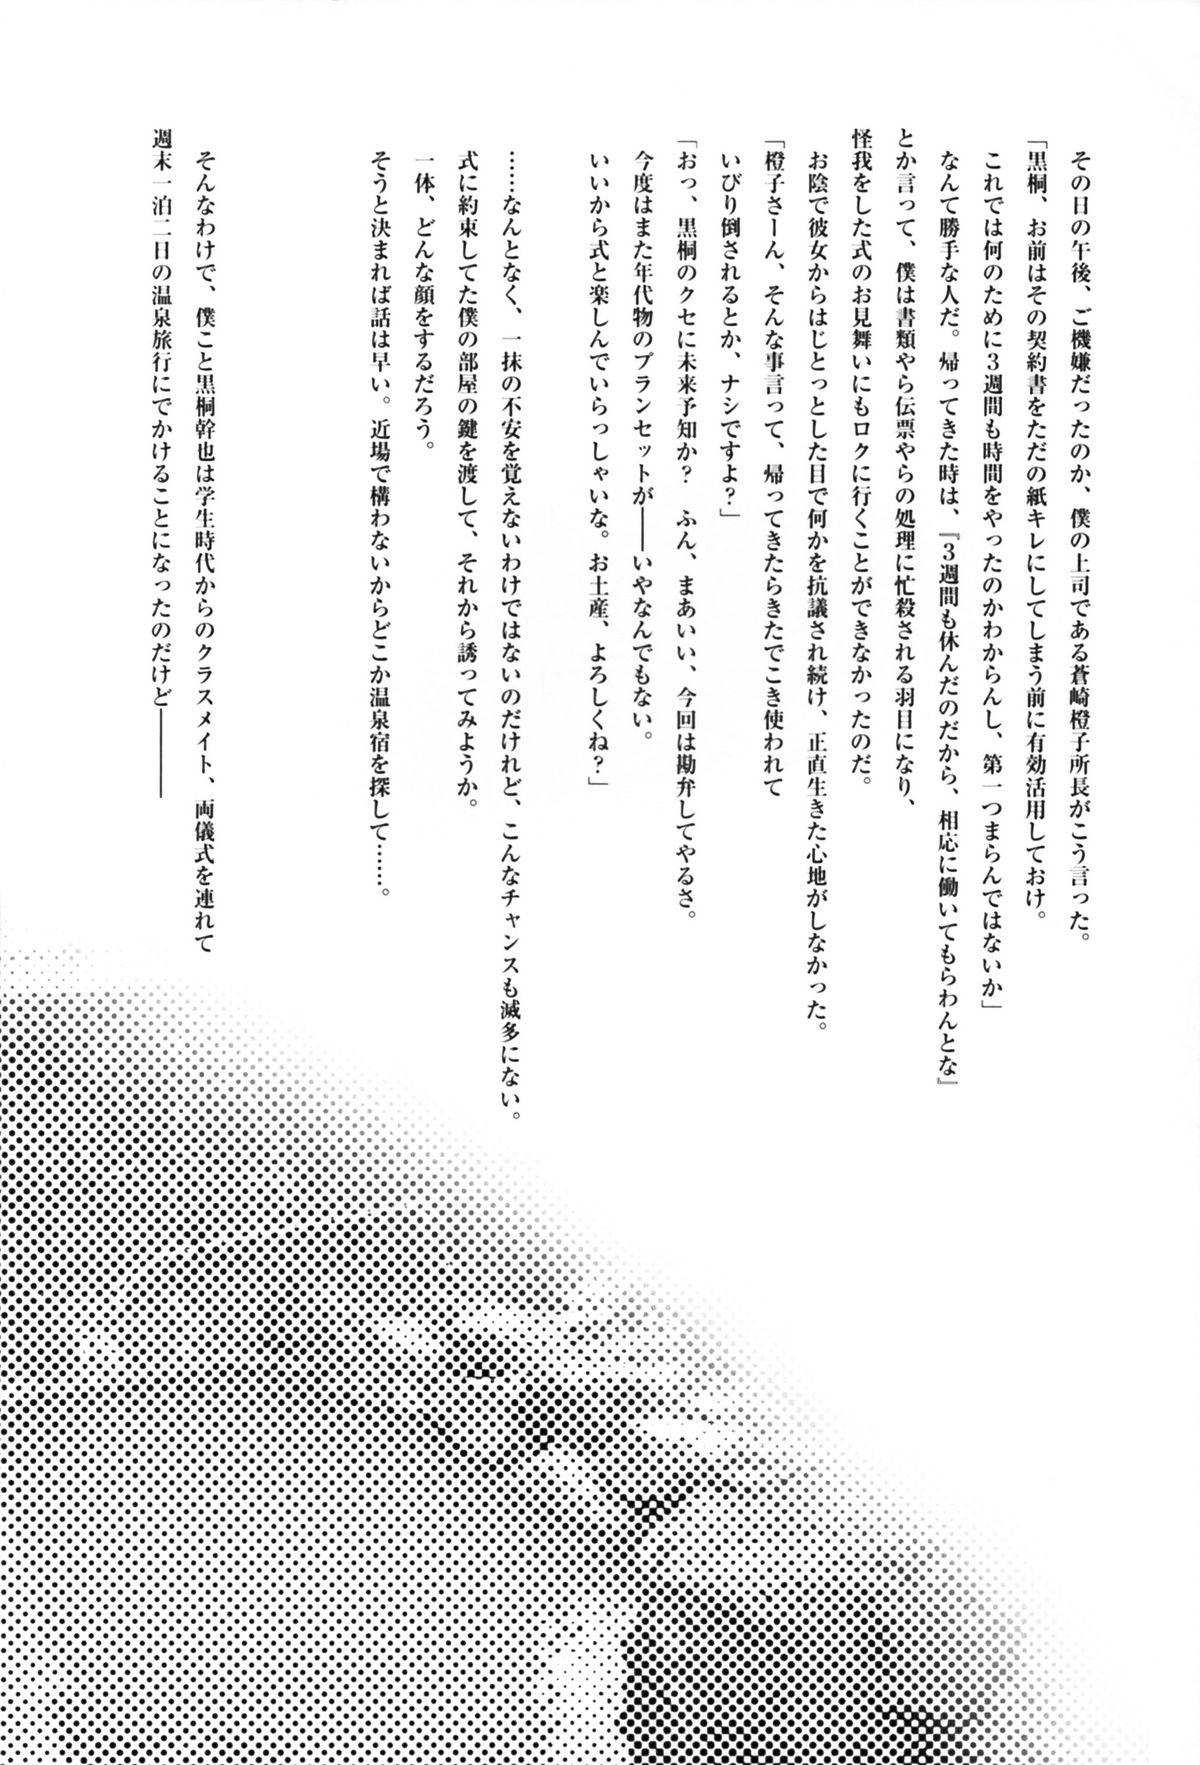 Nalgona Futari no Dokidoki Onsen Ryokou - Kara no kyoukai Amigo - Page 4